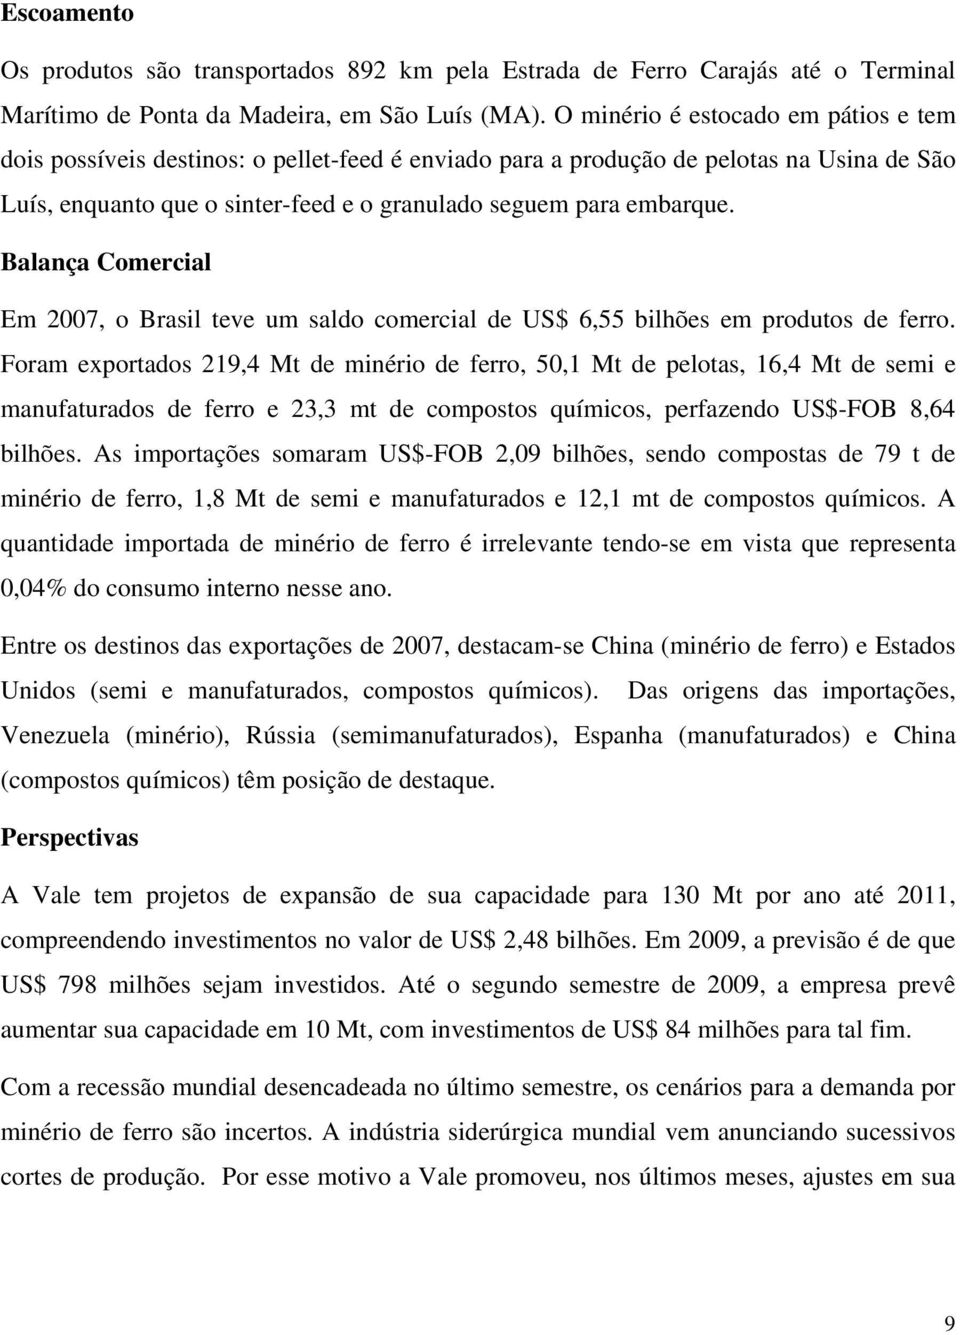 Balança Comercial Em 2007, o Brasil teve um saldo comercial de US$ 6,55 bilhões em produtos de ferro.